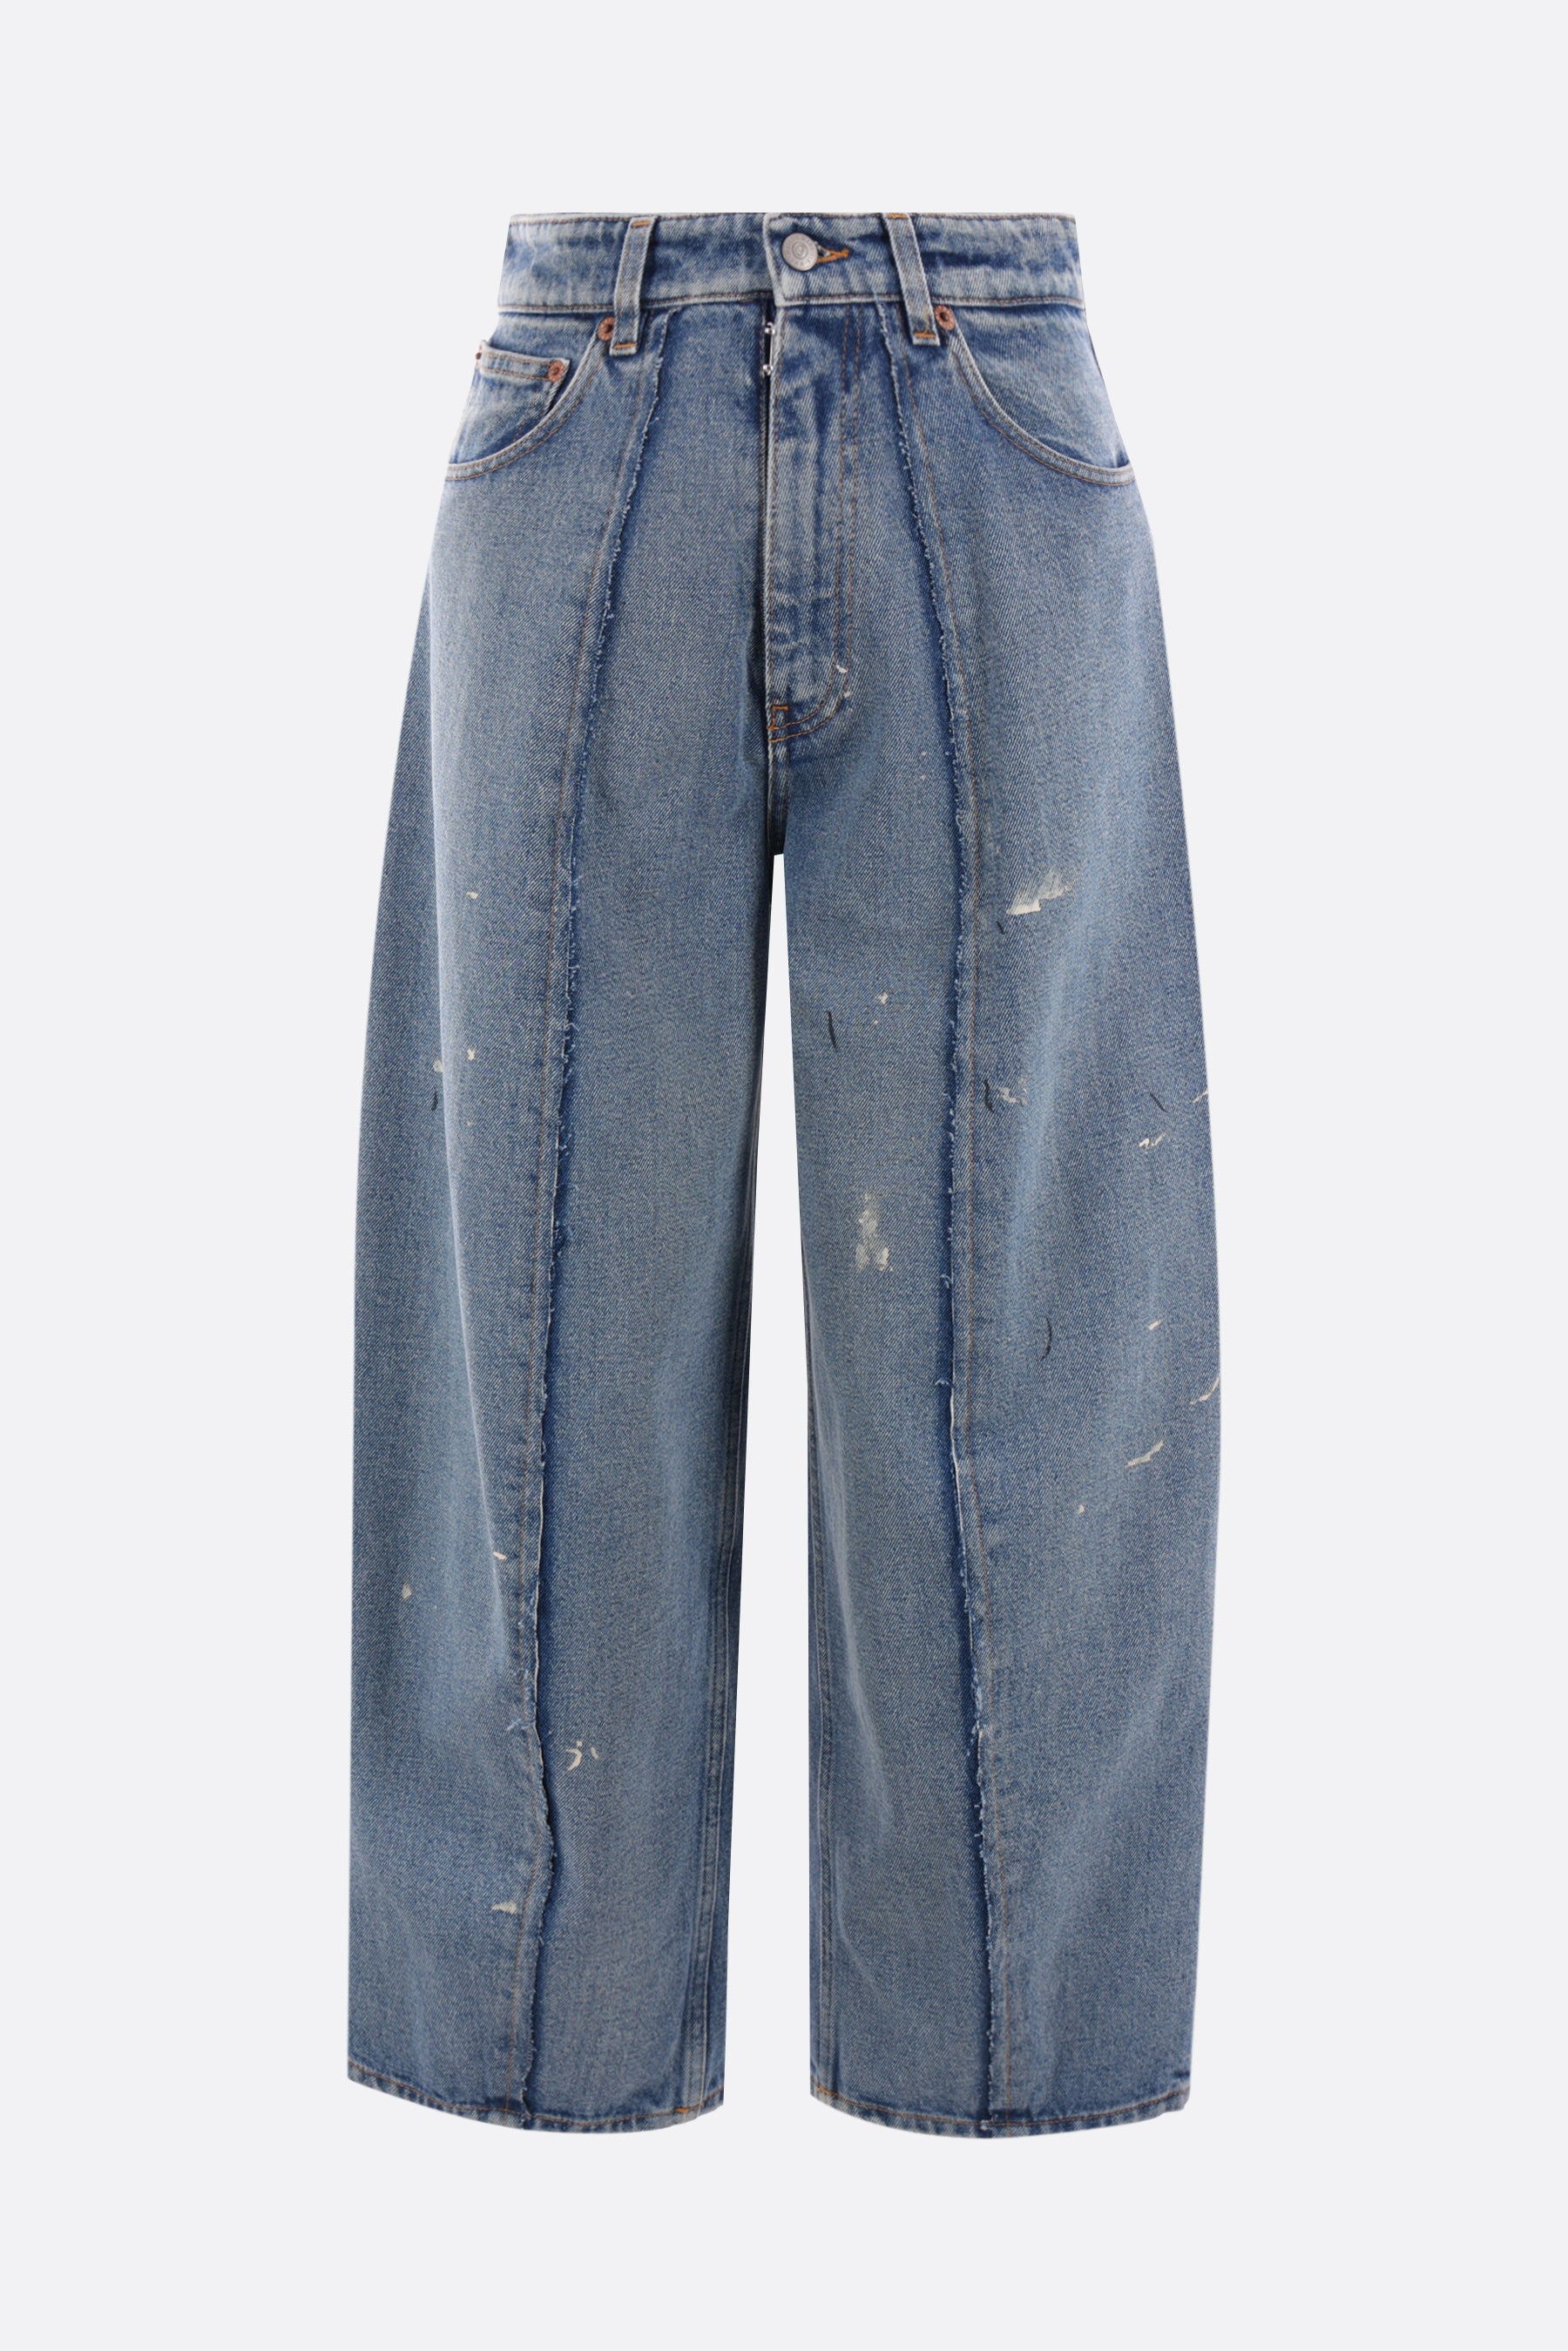 jeans oversize cropped in denim con macchie di colore